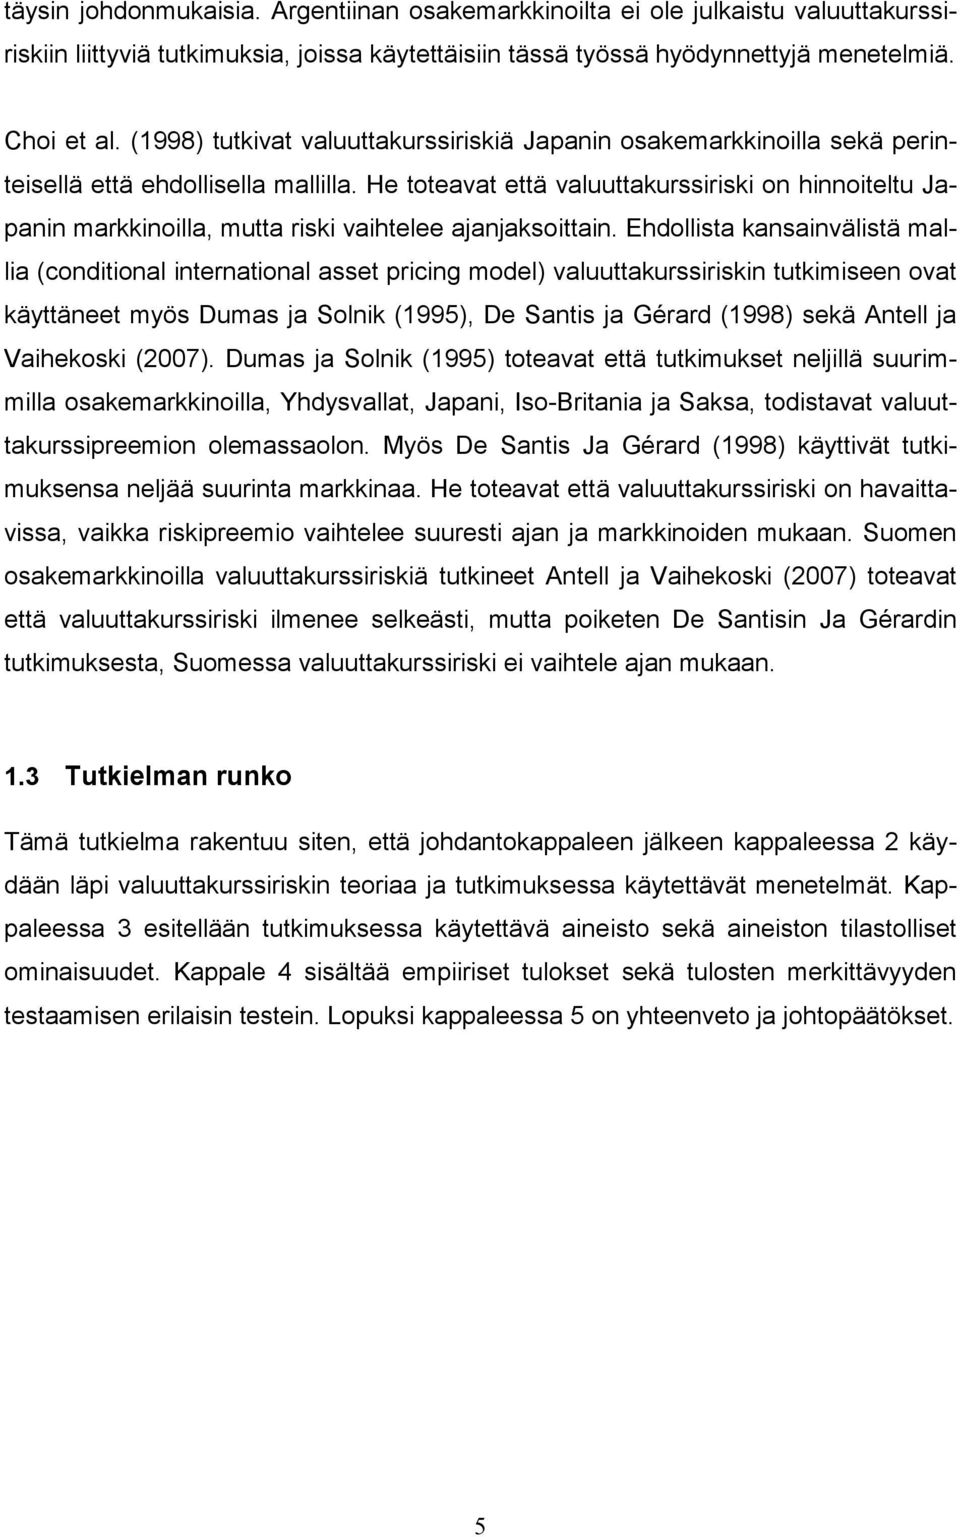 Ehdollsta kansanvälstä malla (condtonal nternatonal asset prcng model) valuuttakurssrskn tutkmseen ovat käyttäneet myös Dumas ja Solnk (1995), De Sants ja Gérard (1998) sekä Antell ja Vahekosk (2007).